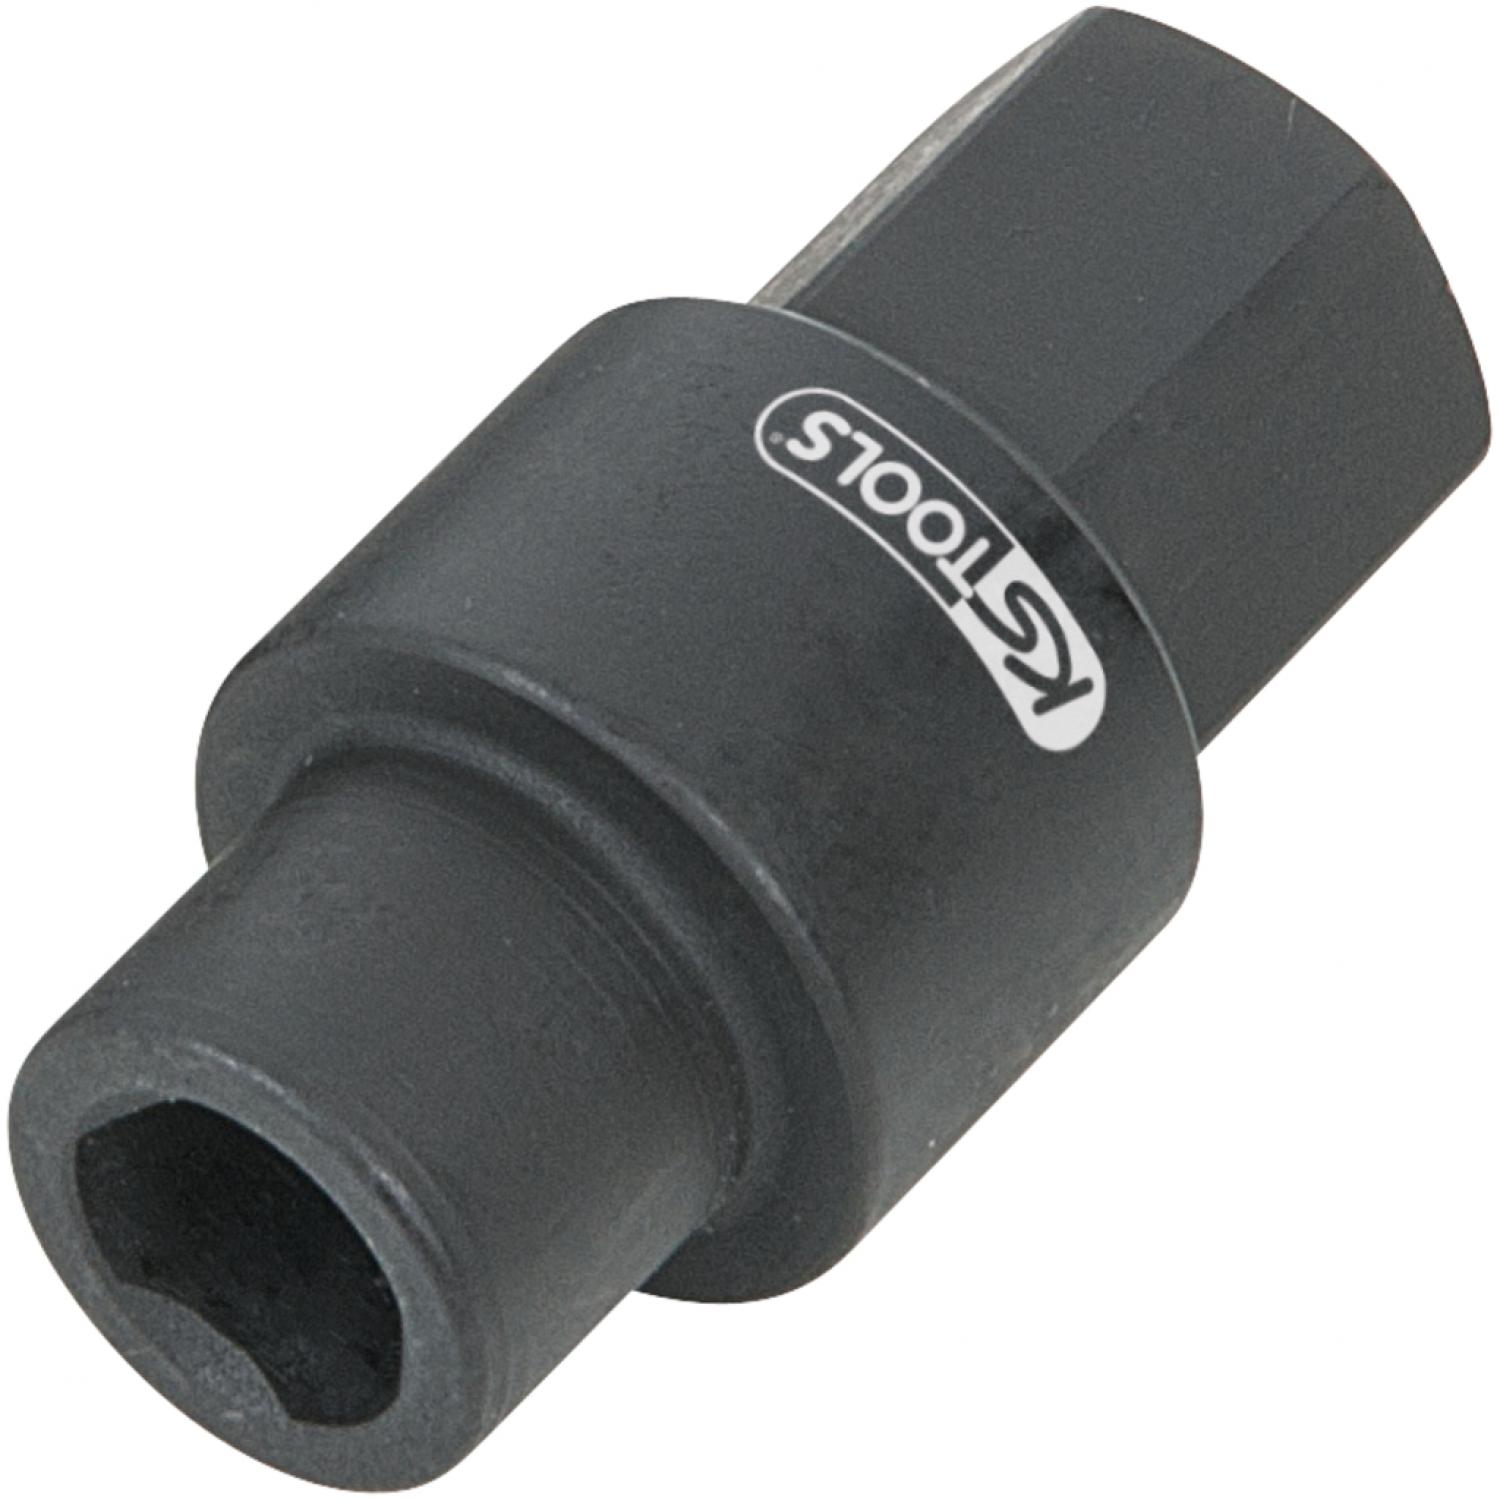 картинка Торцовая головка для впрыскивающего топливного насоса Bosch, Ø 18 мм, L = 36 мм от магазина "Элит-инструмент"